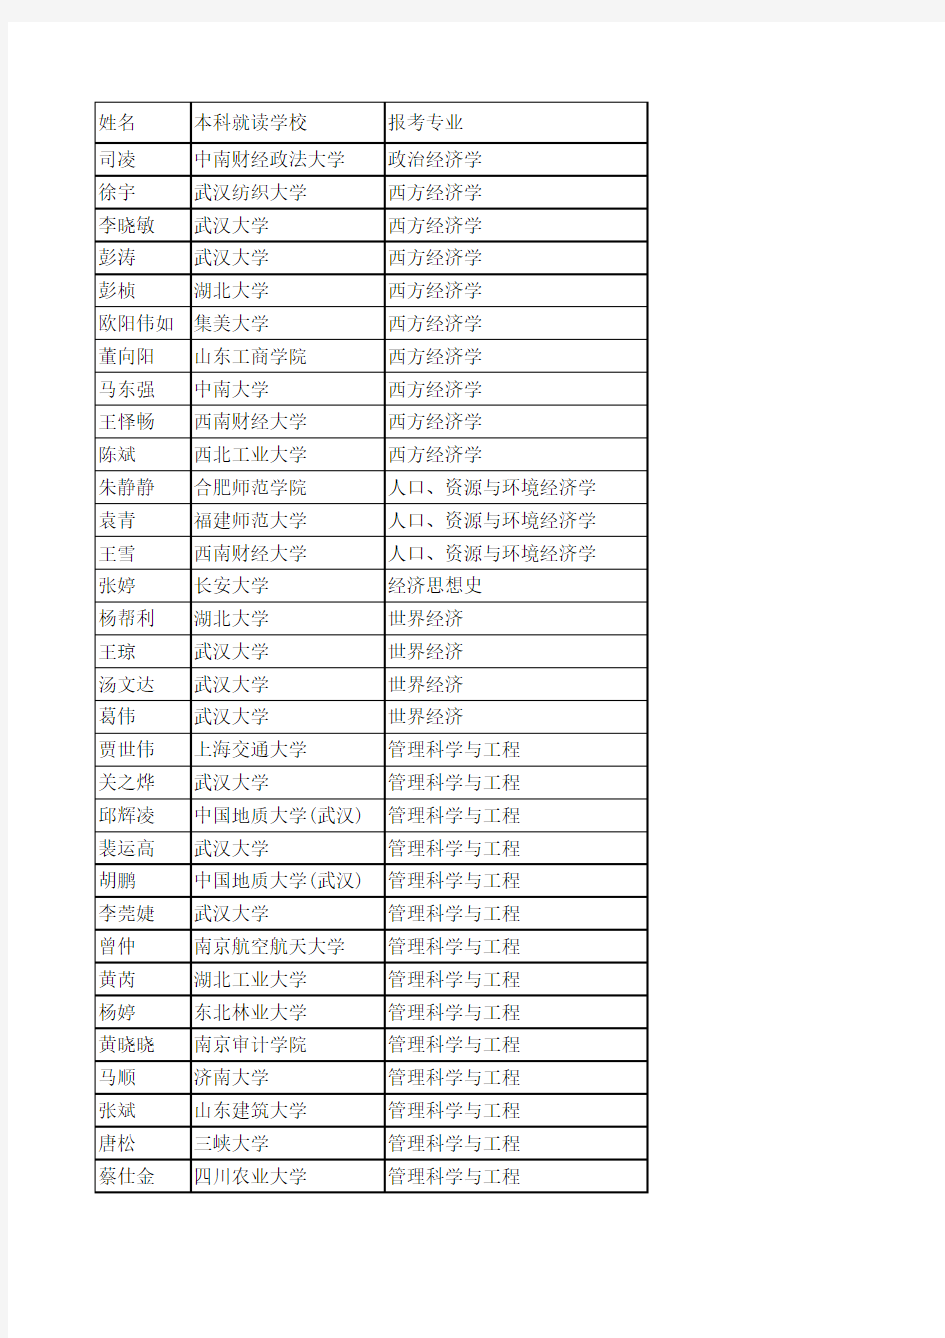 武汉大学经济与管理学院2012复试名单